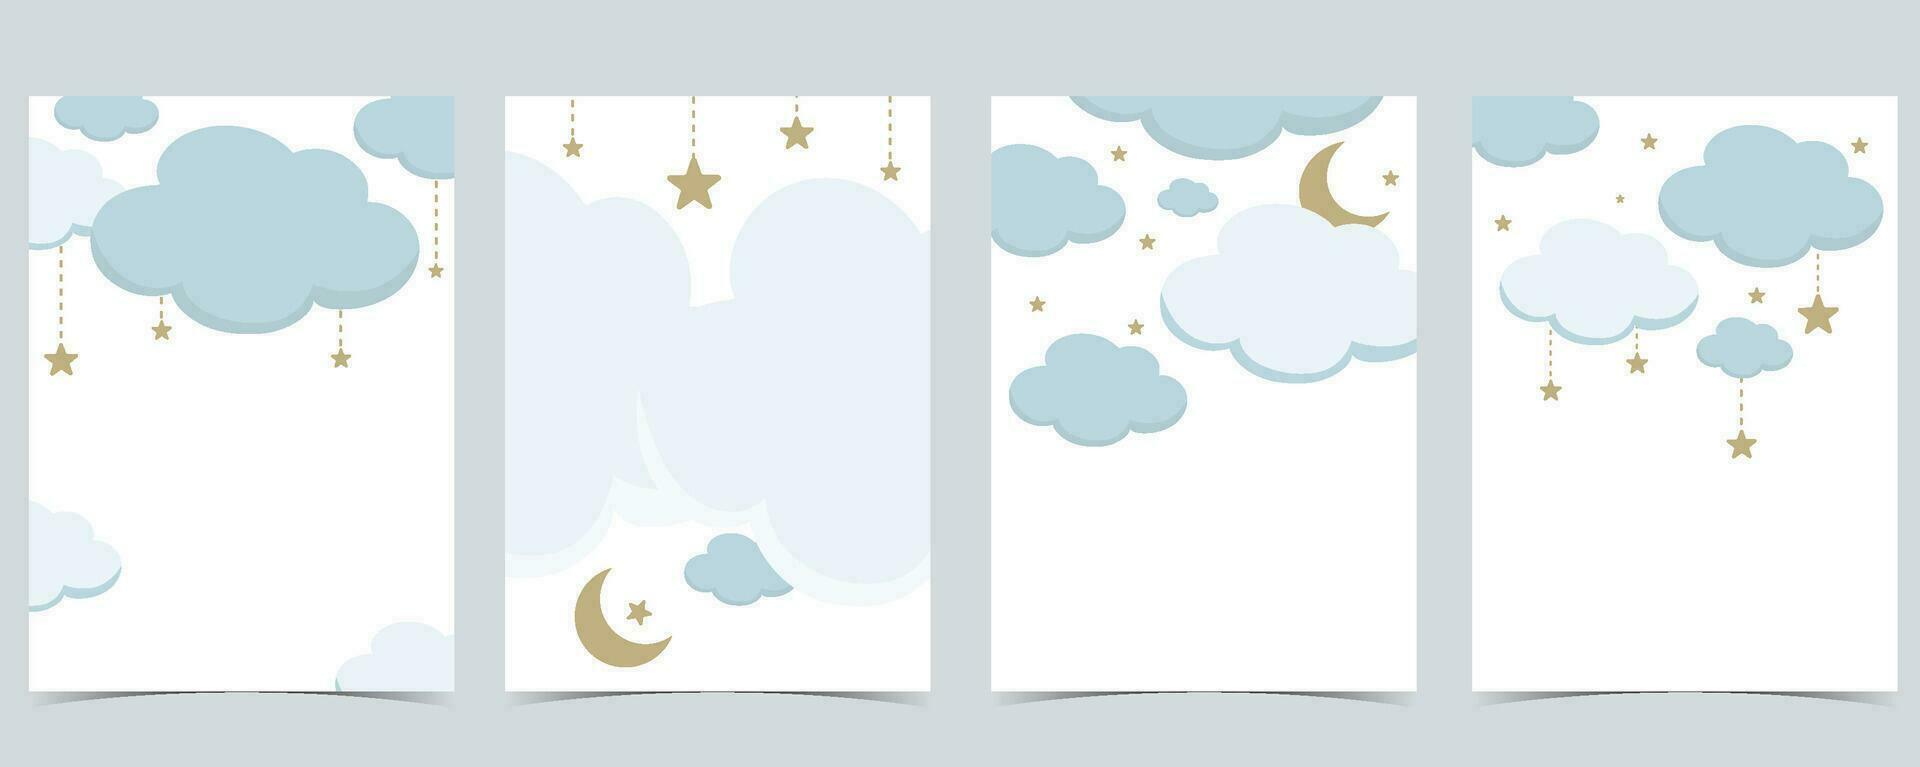 baby douche uitnodiging kaart voor jongen met ballon, wolk, lucht, blauw vector